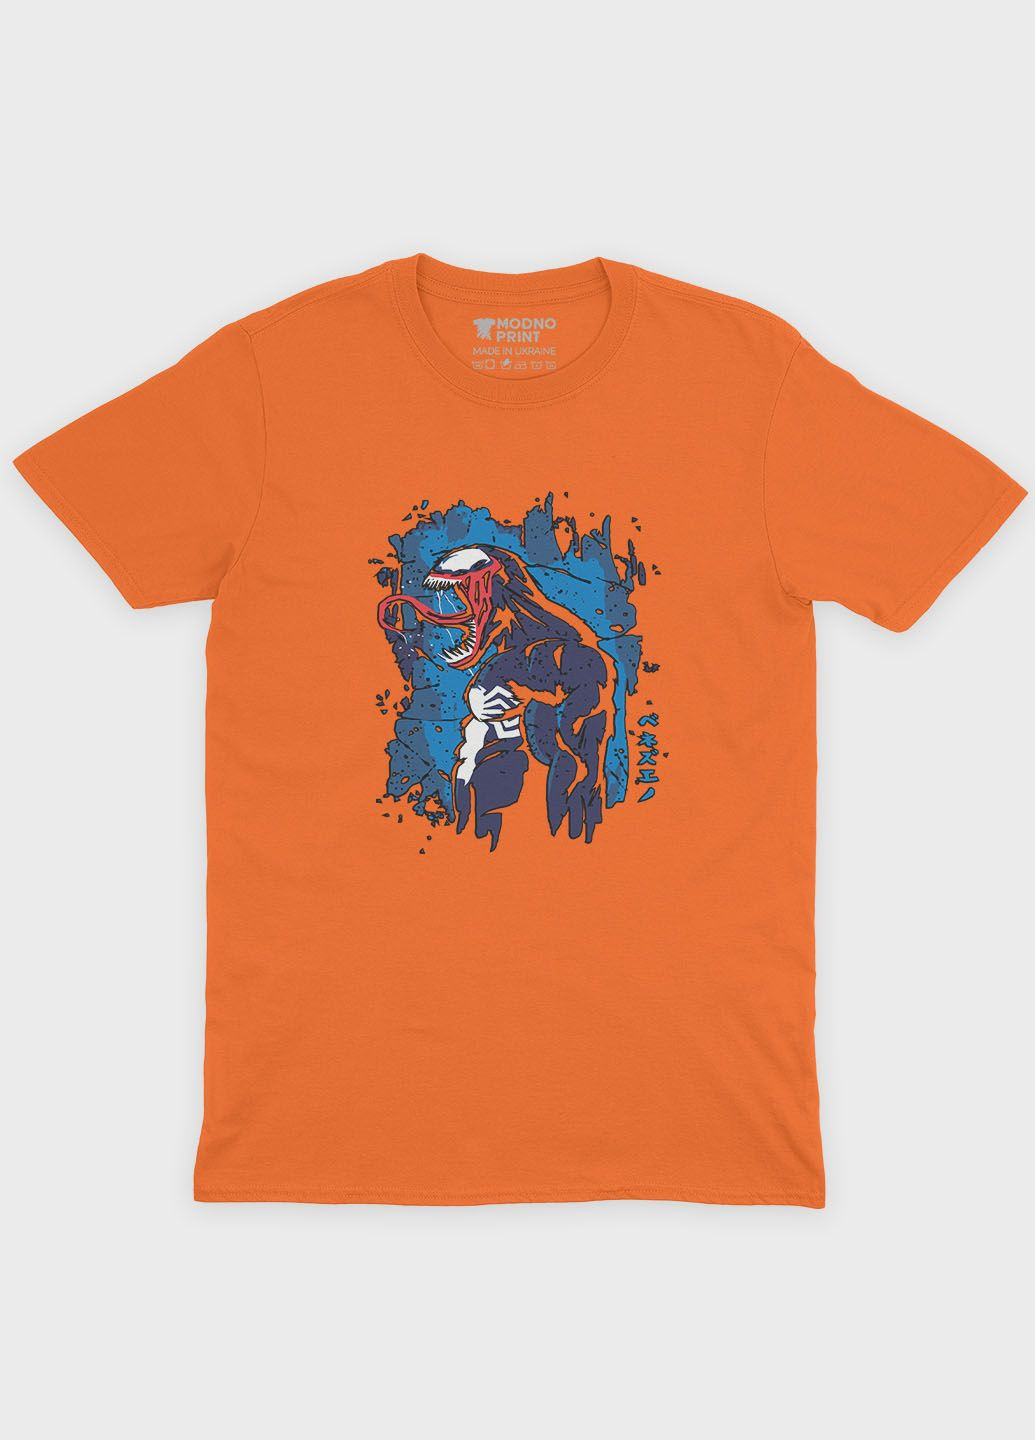 Оранжевая демисезонная футболка для мальчика с принтом супервора - веном (ts001-1-ora-006-013-014-b) Modno